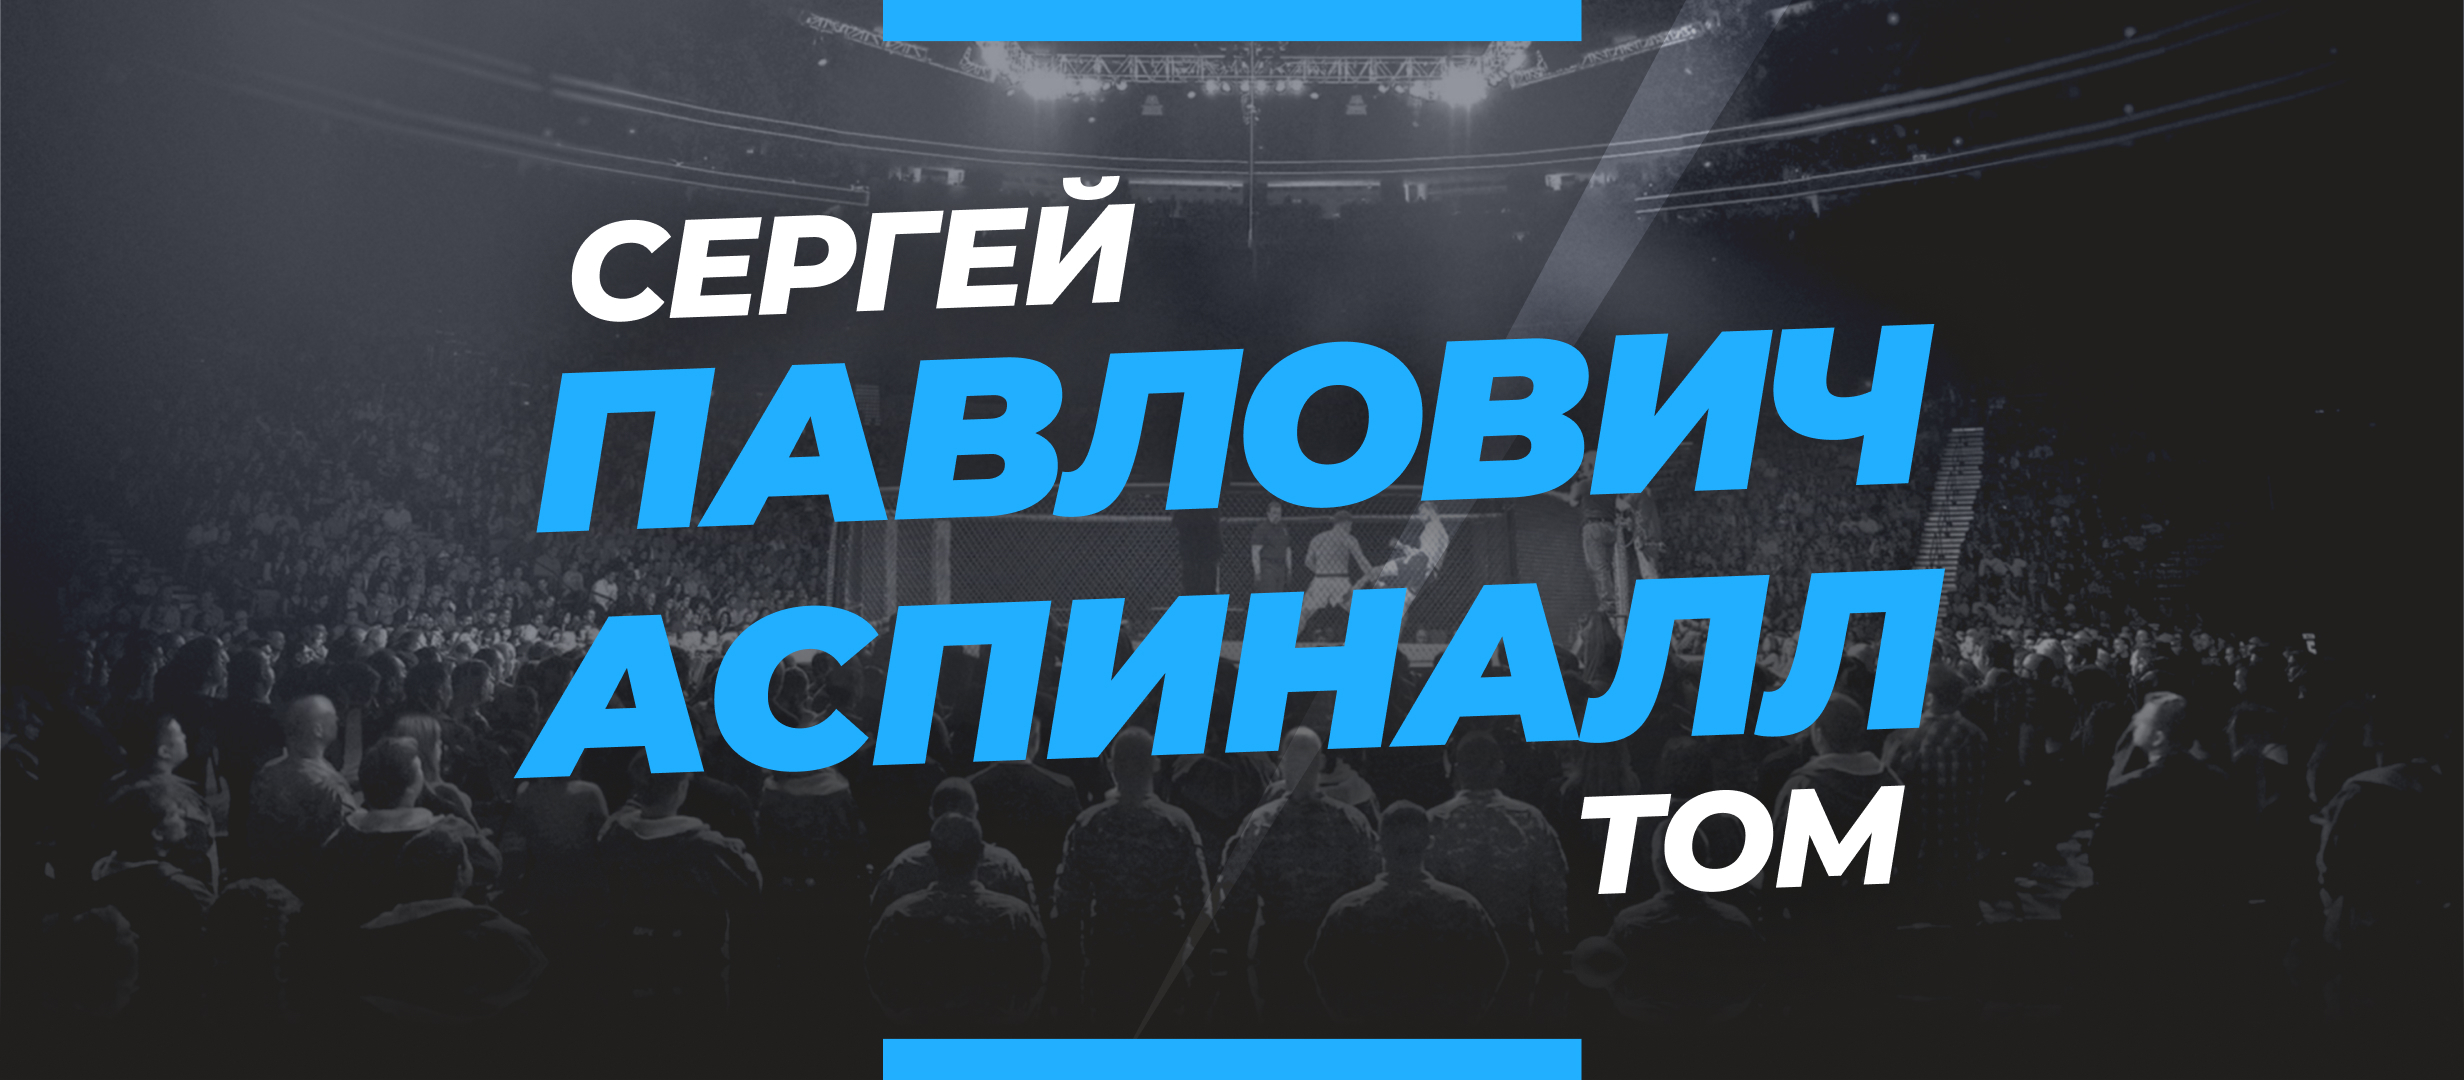 Павлович — Аспиналл: ставки и коэффициенты на бой UFC 295